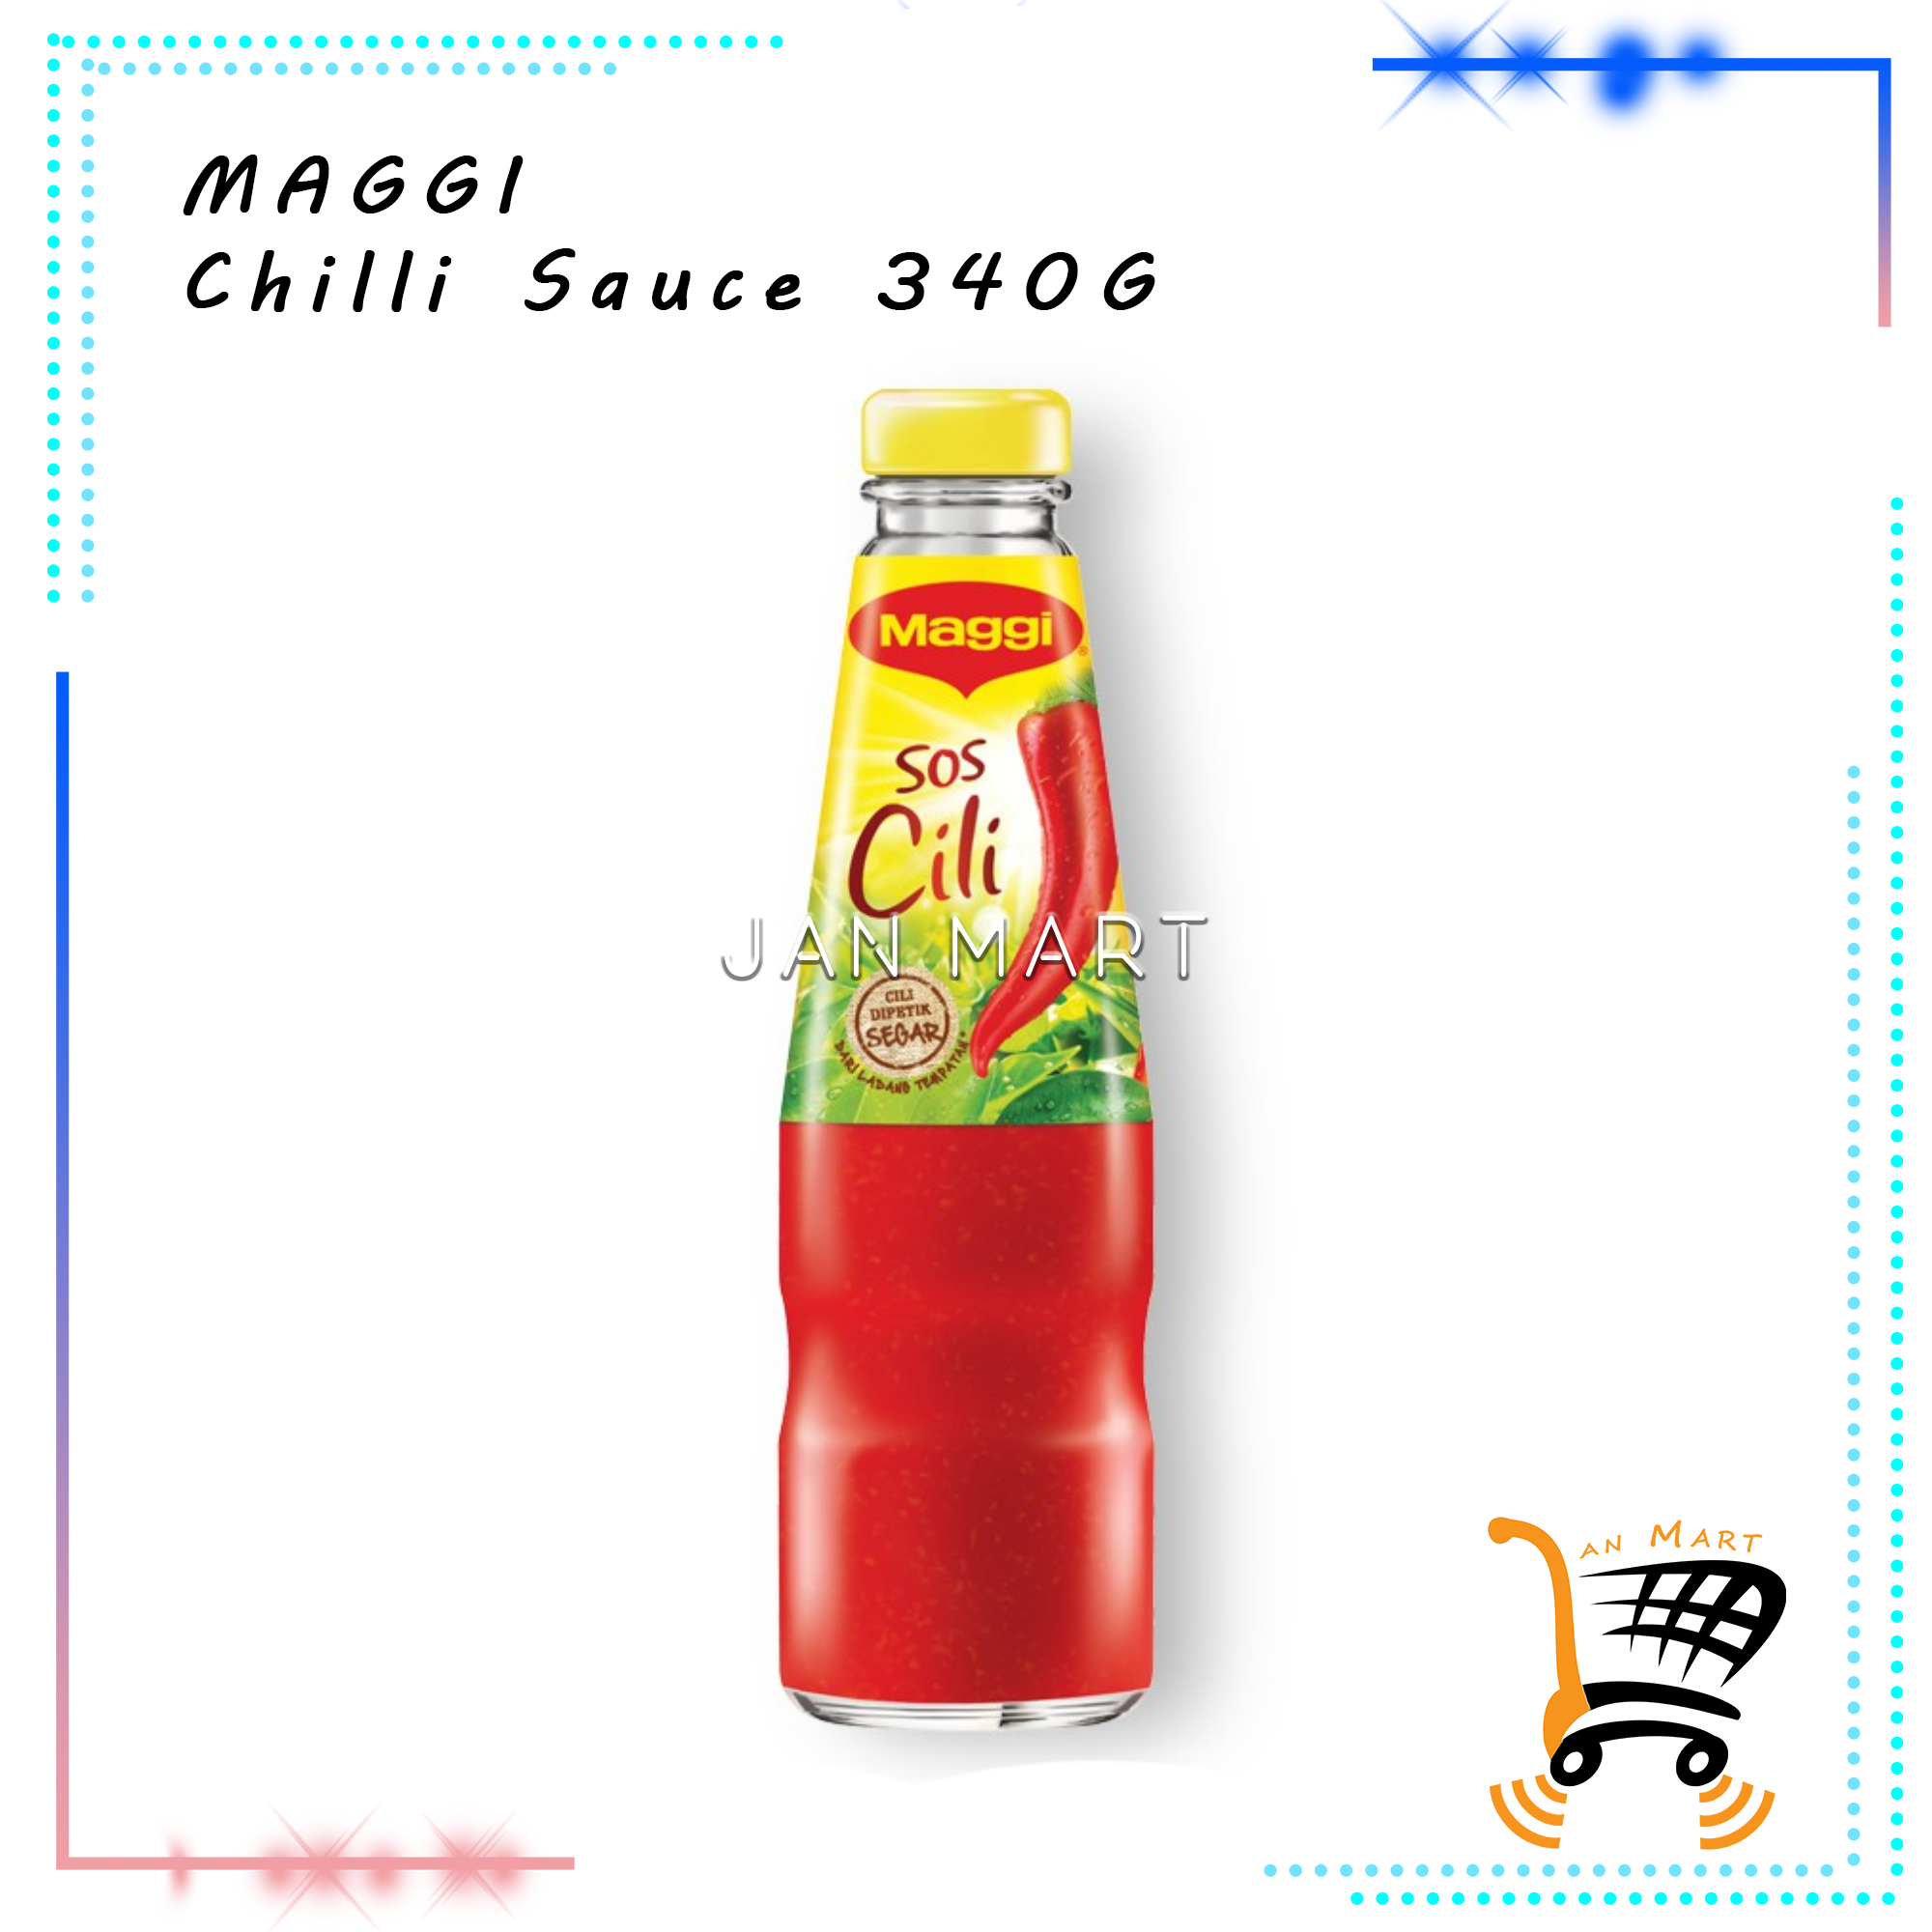 MAGGI Chilli Sauce 340G